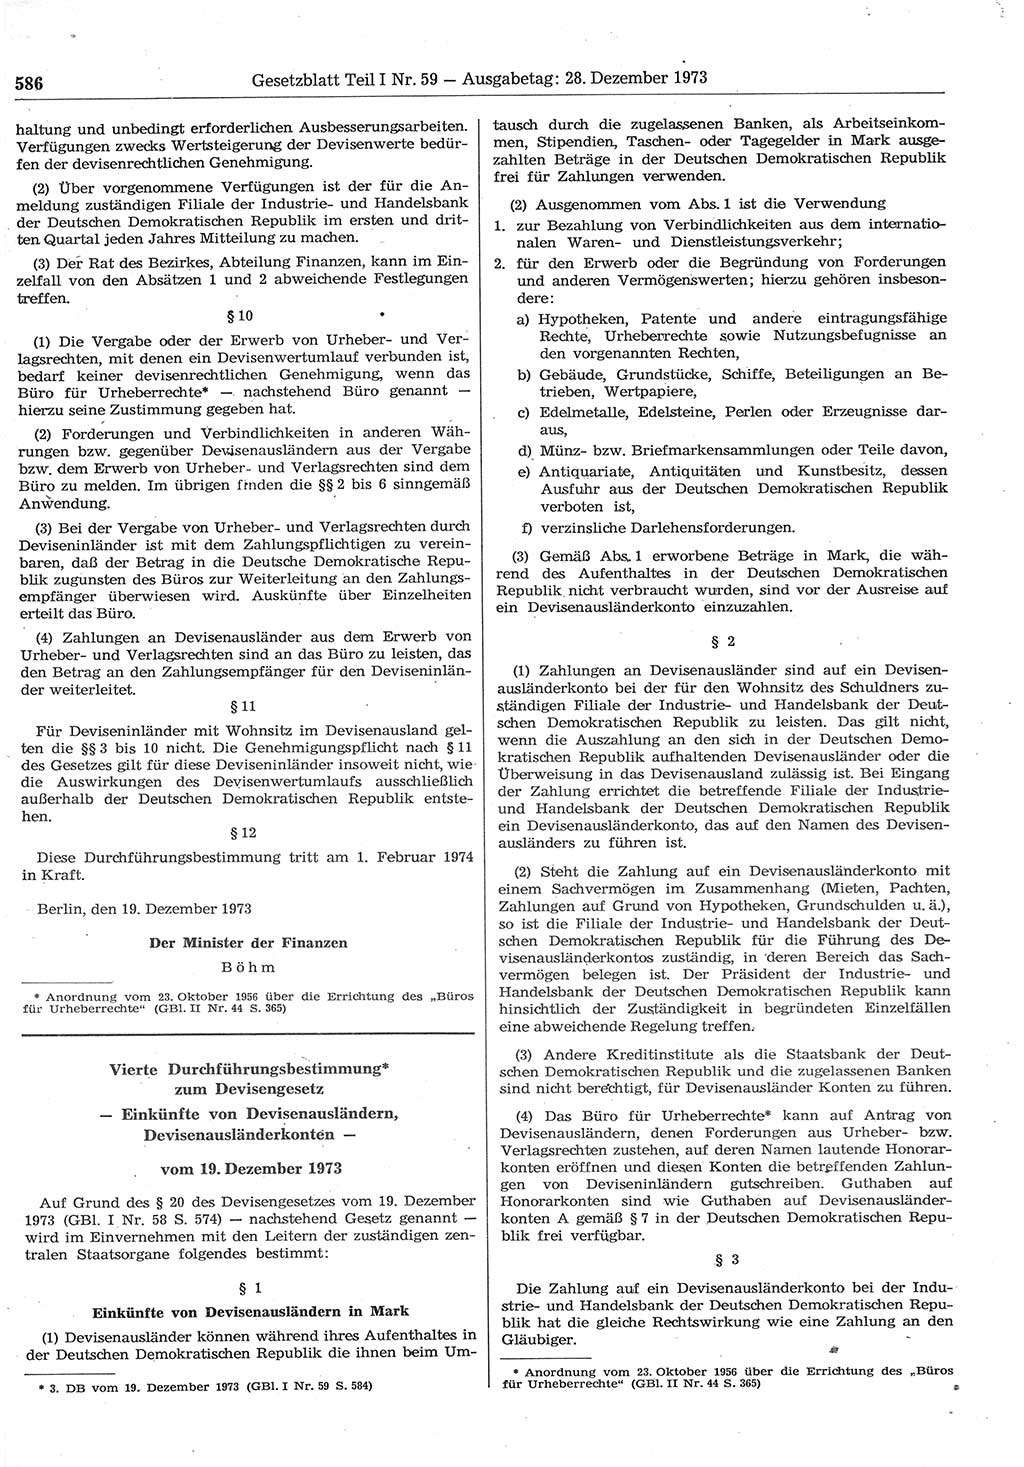 Gesetzblatt (GBl.) der Deutschen Demokratischen Republik (DDR) Teil Ⅰ 1973, Seite 586 (GBl. DDR Ⅰ 1973, S. 586)